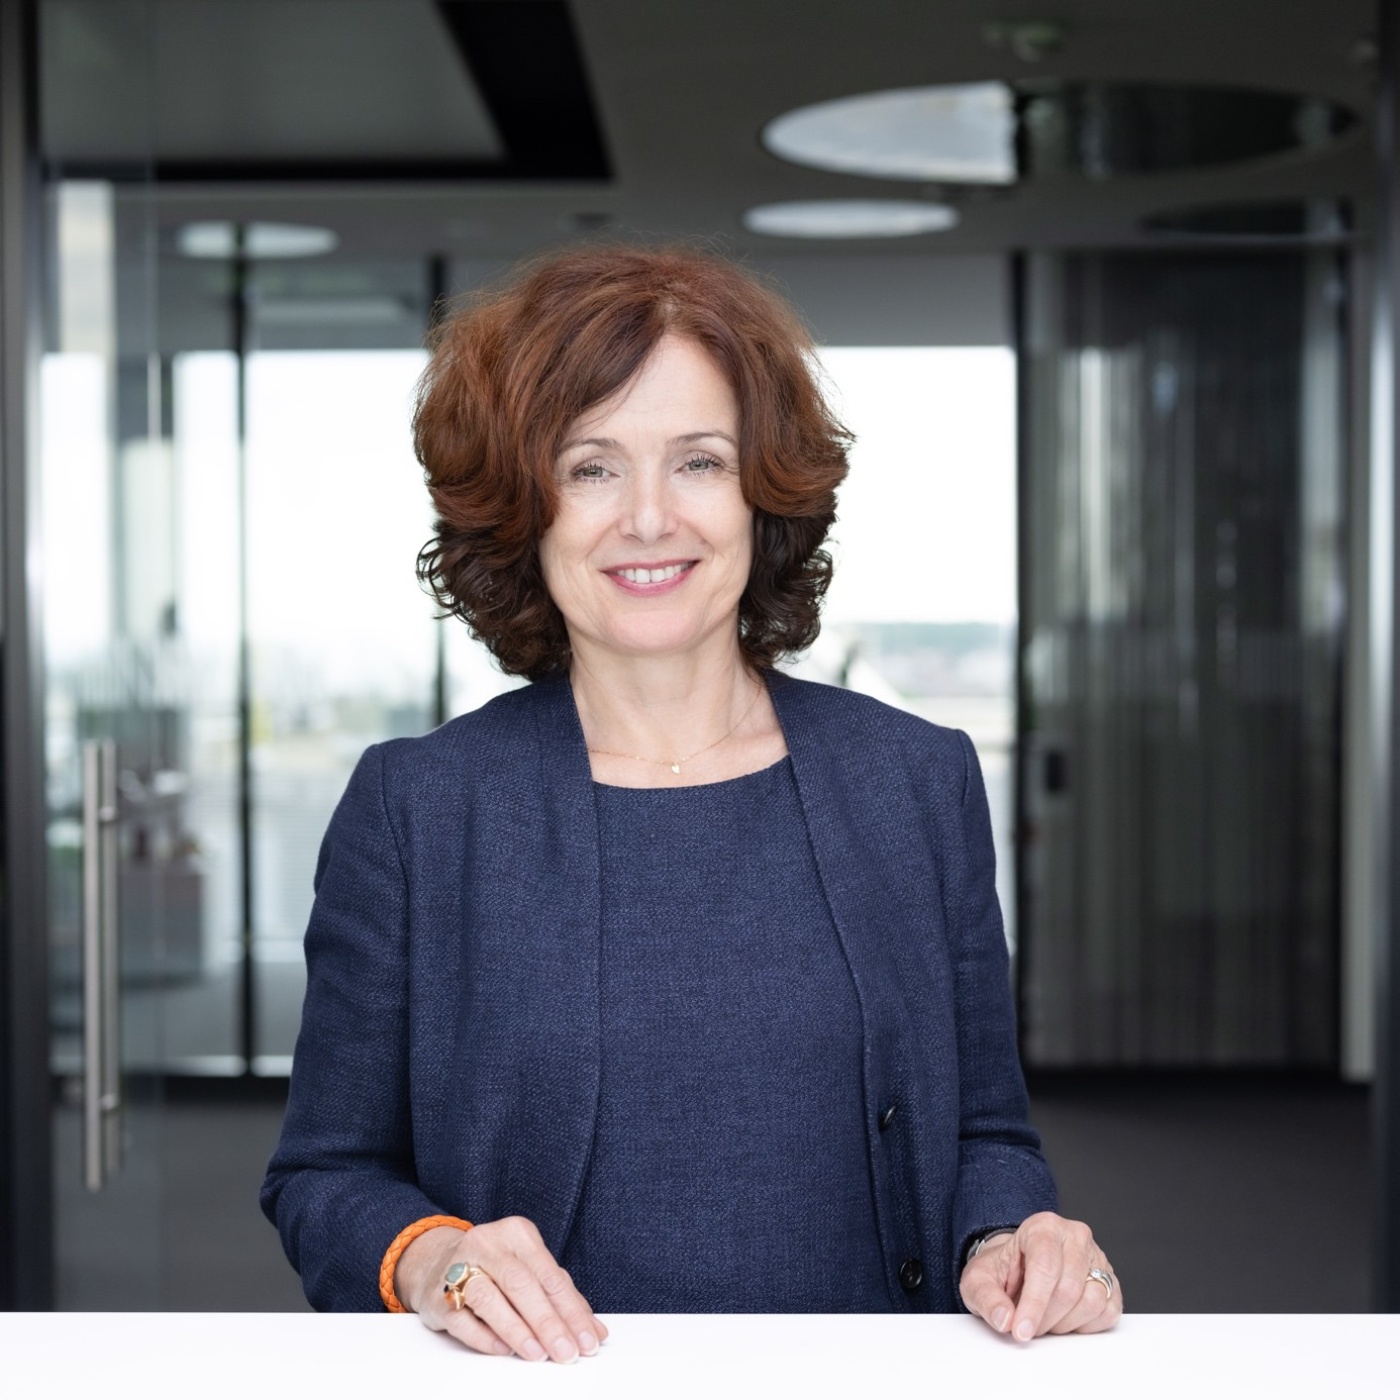 Emese Weissenbacher ist seit 2015 Geschäftsführerin Finanzen (CFO) und seit Januar 2020 stellvertretende Vorsitzende der Geschäftsführung bei MANN+HUMMEL. 